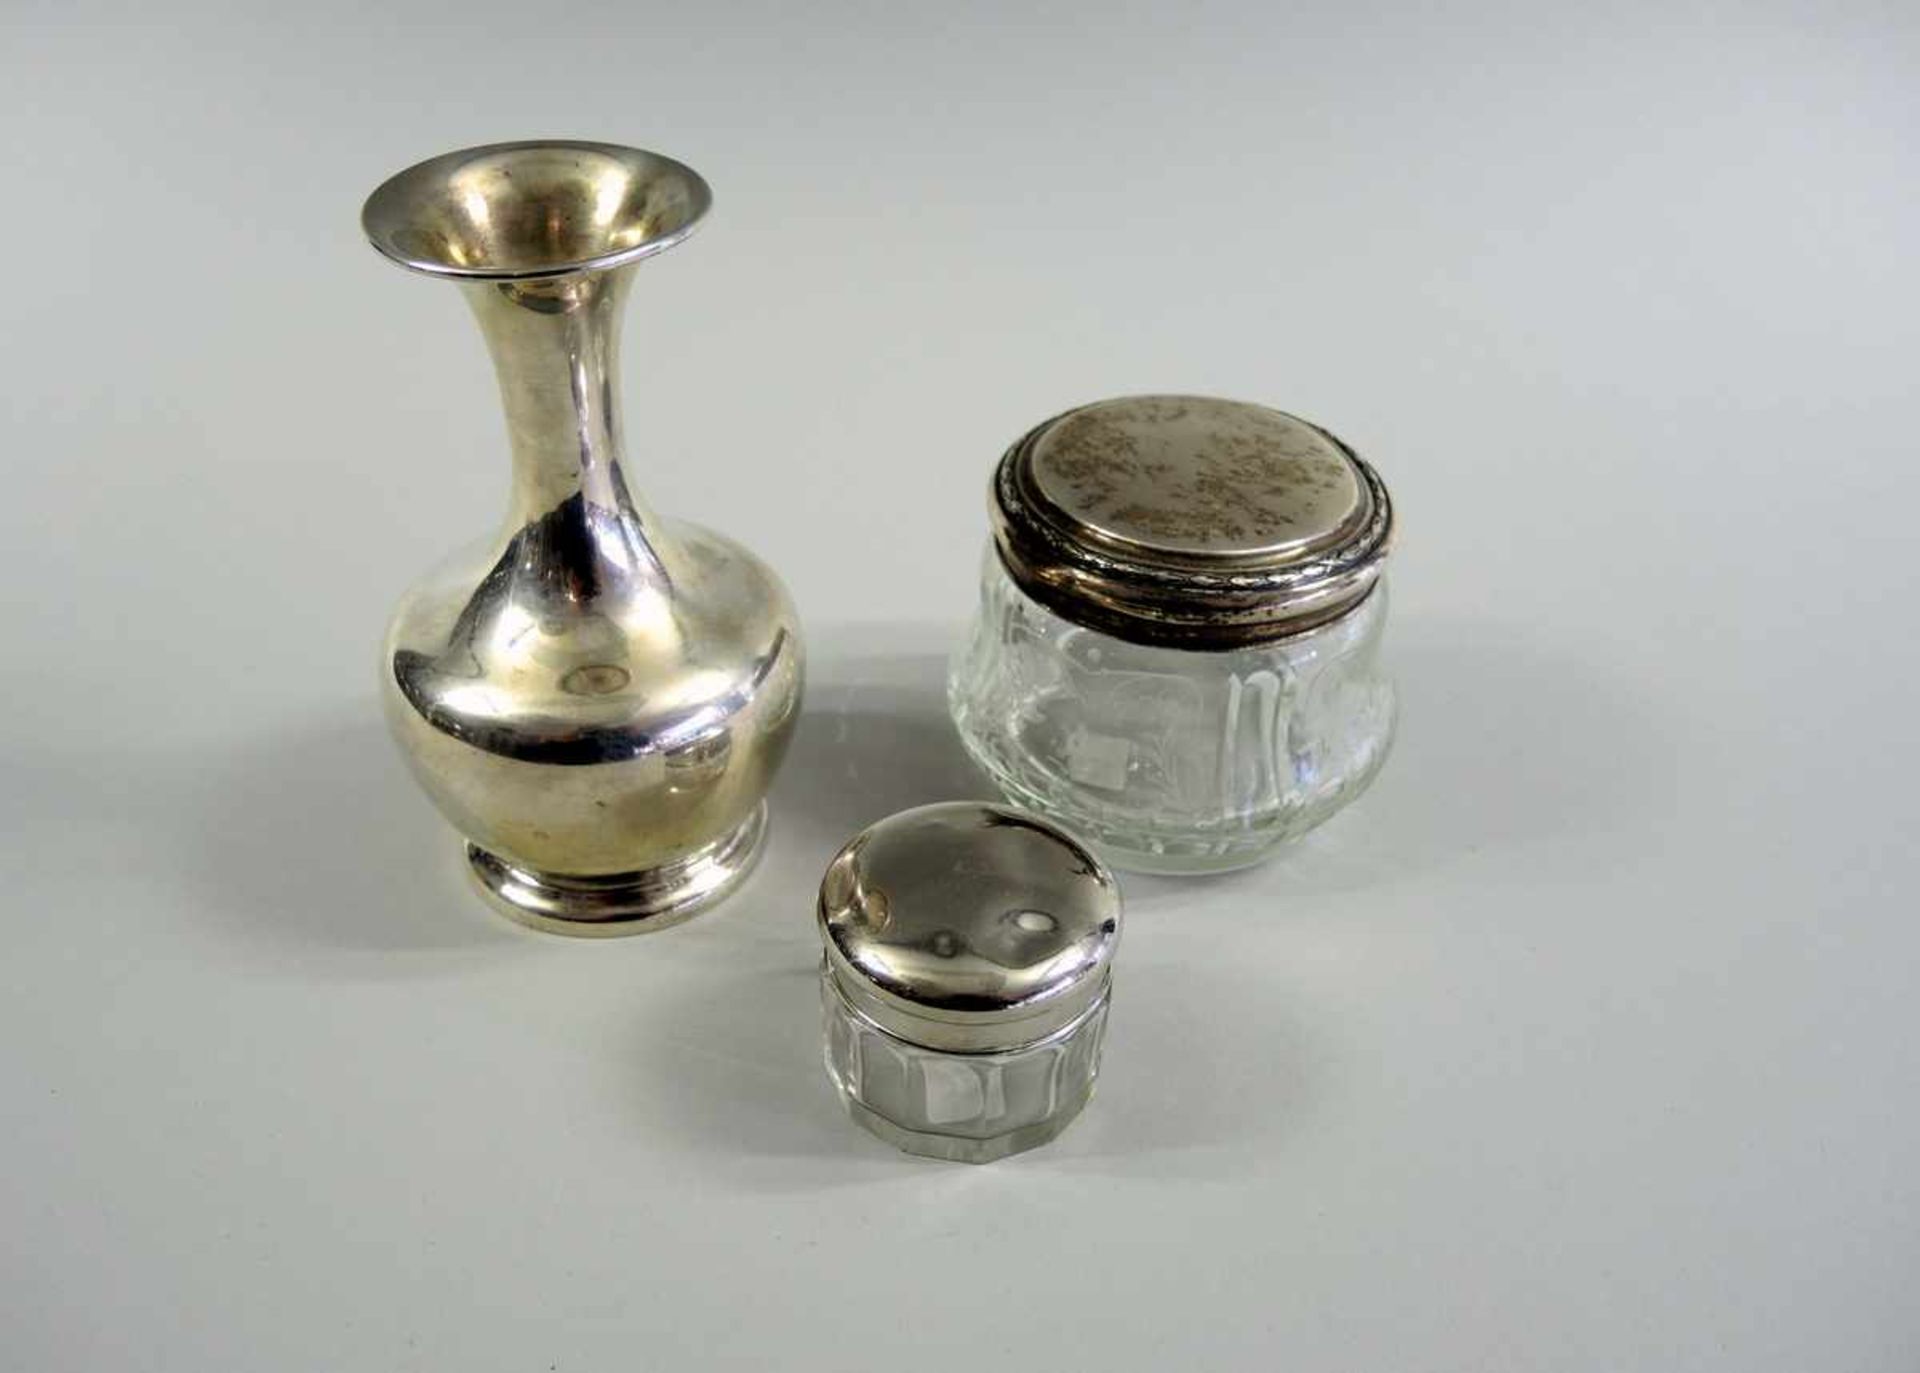 Kleinsilber Sammlung Silber 800 und Silber 830, am Boden und Rand punziert. Der Deckel der kleinen